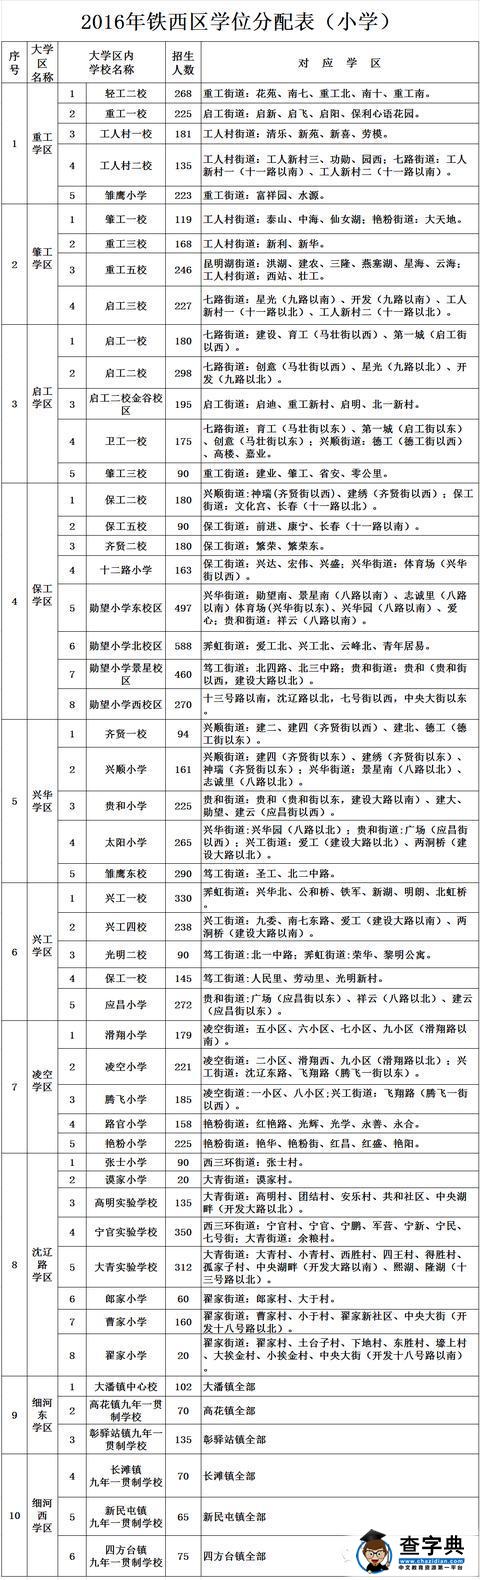 2016年沈阳铁西区学位分配表招生划片范围1